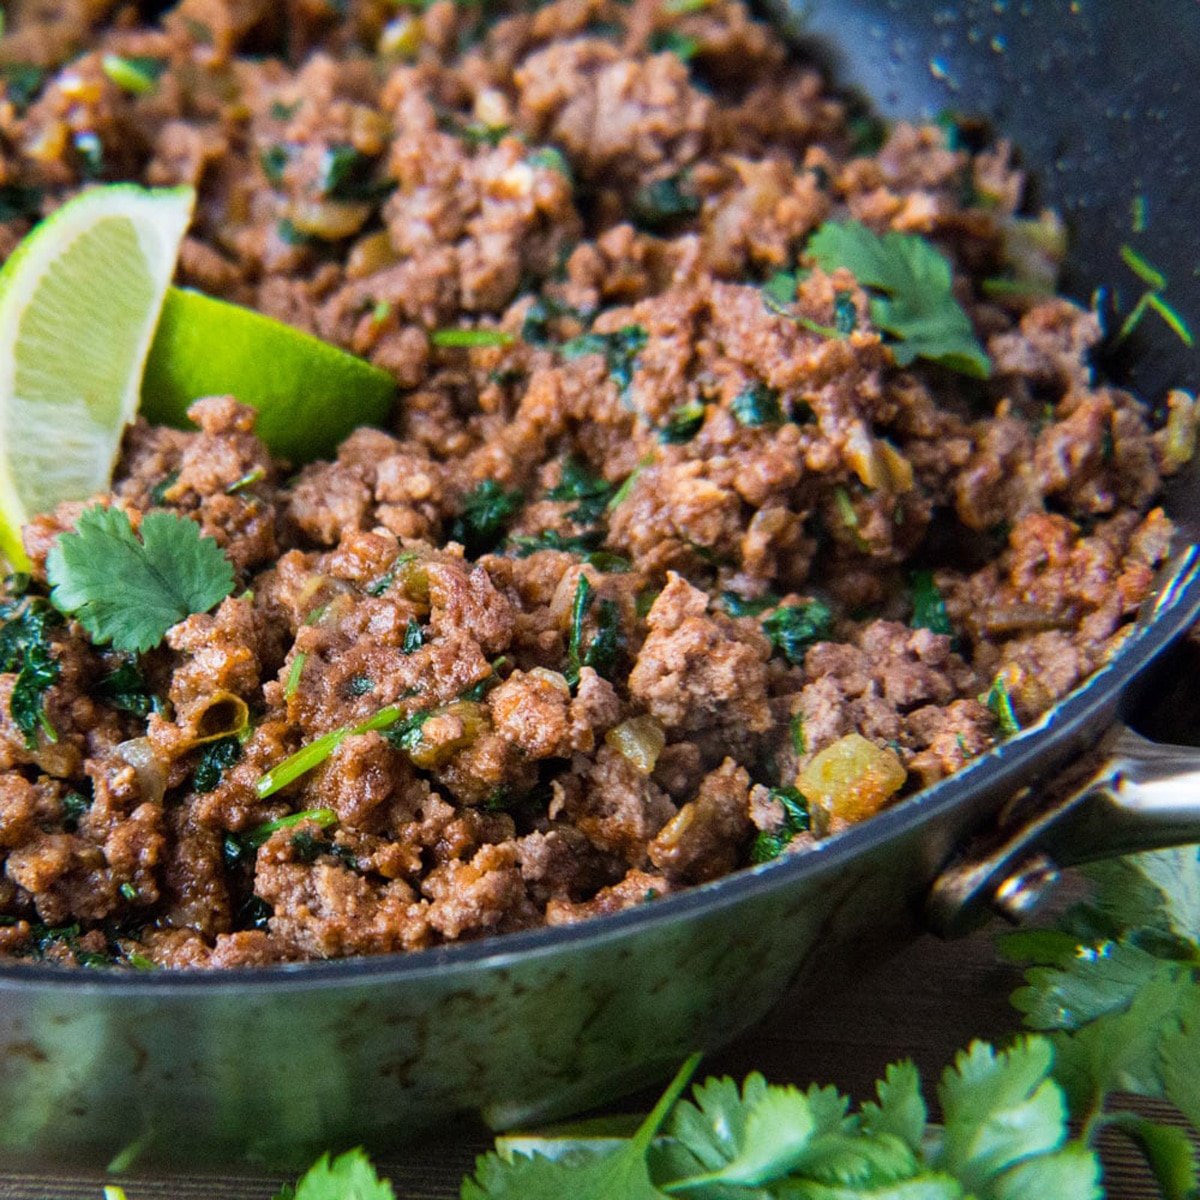 Kvadratna slika taco mesa kuhanog u tavi s limetom i cilantrom.